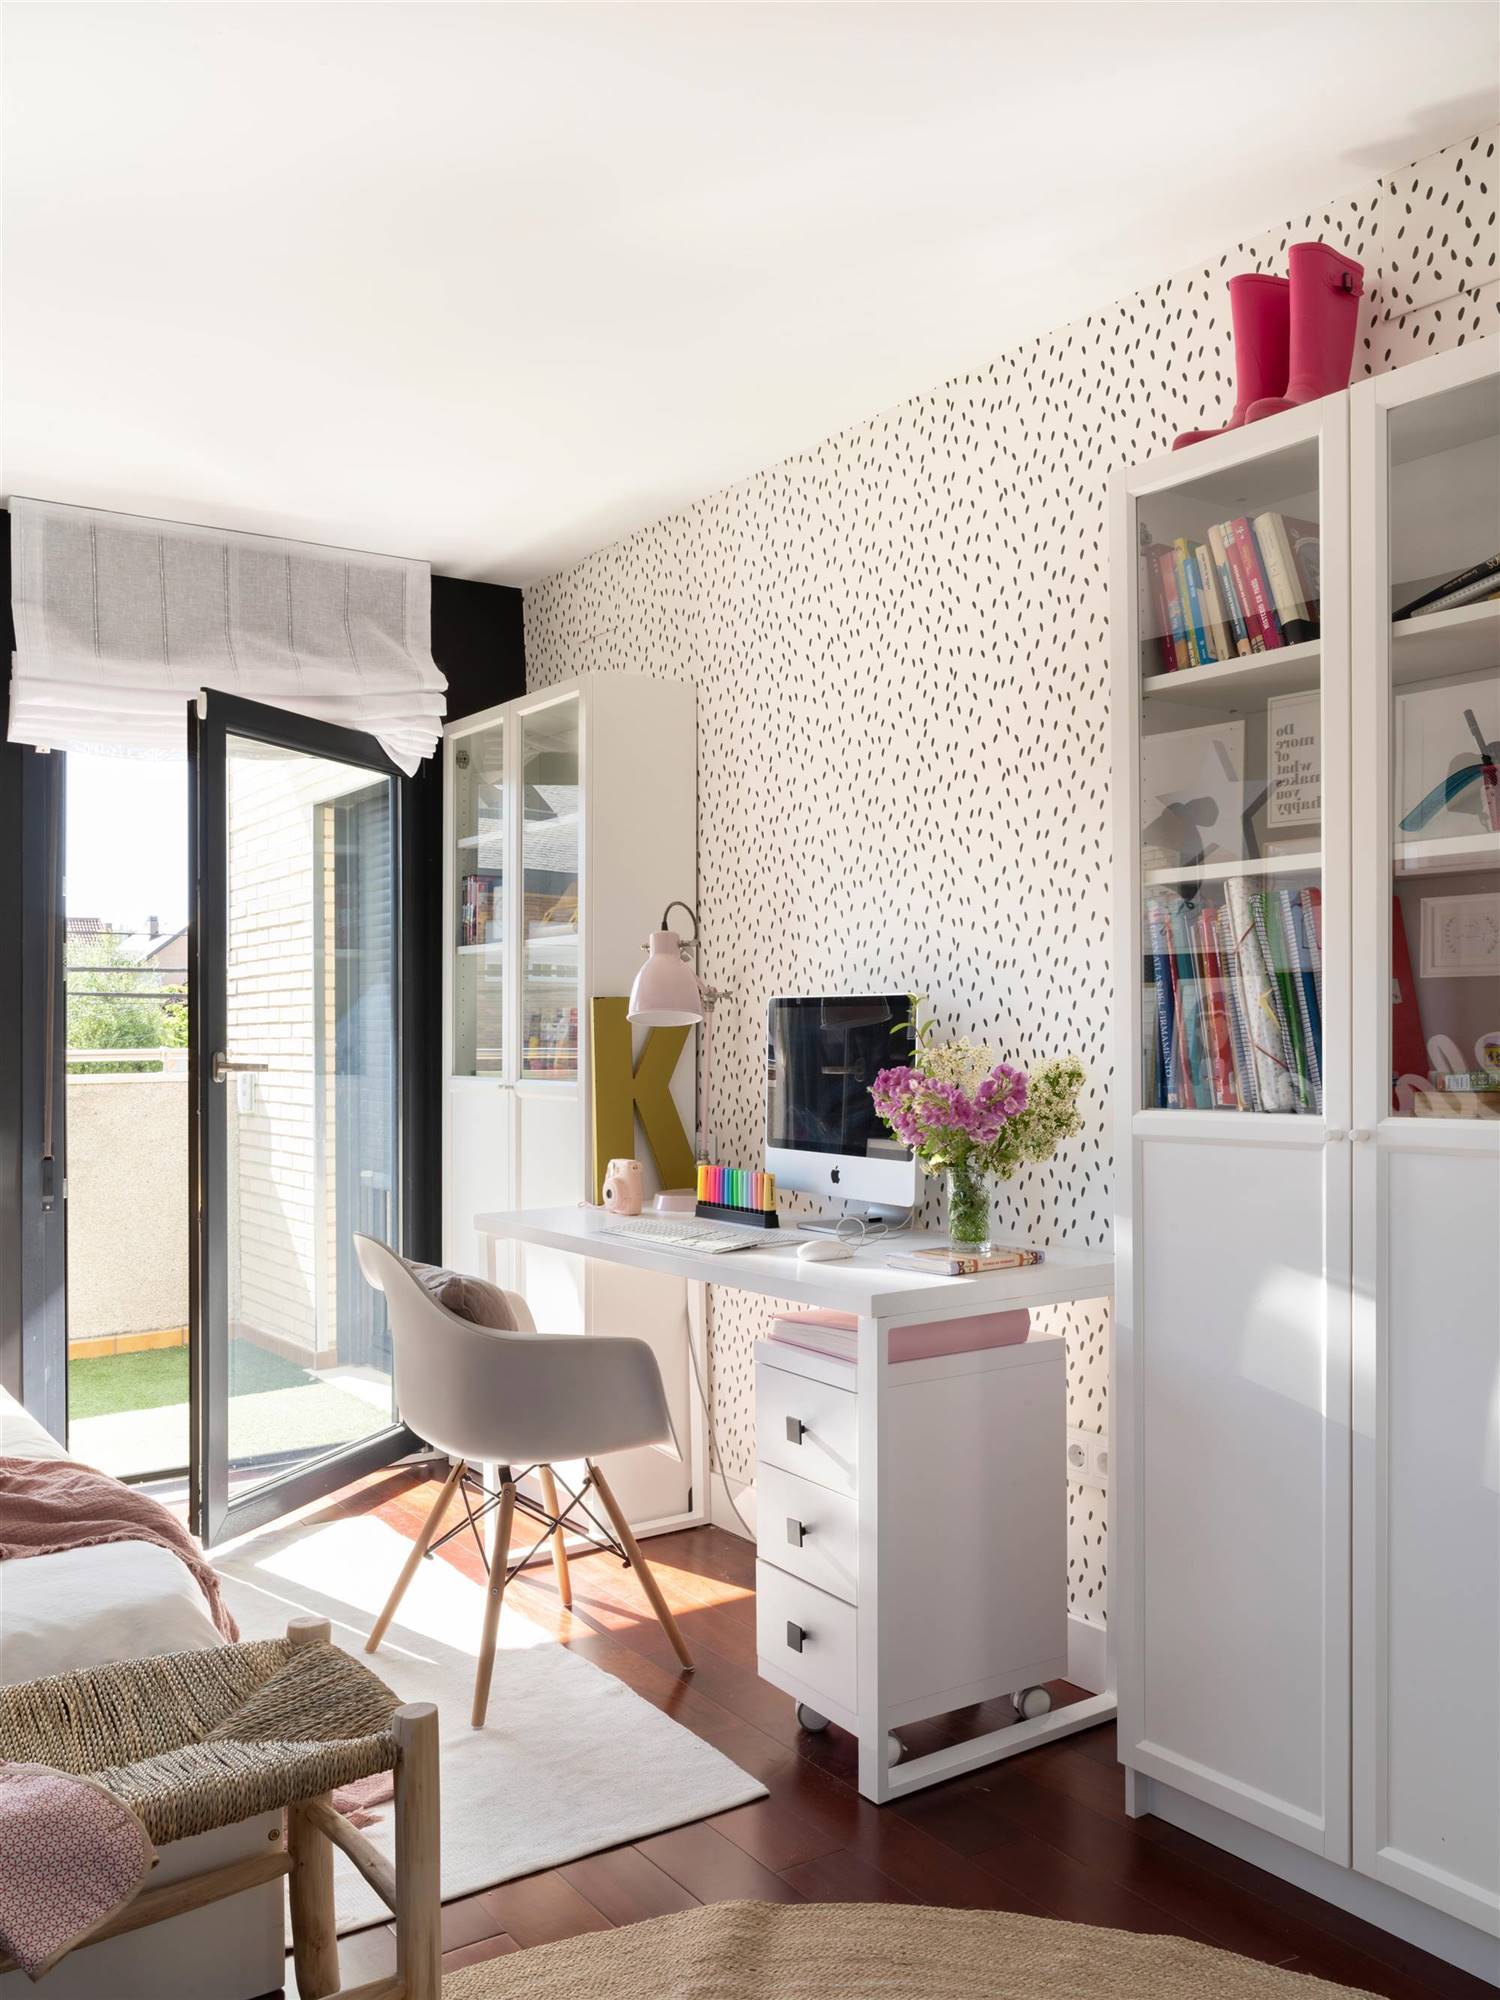 00527507 Dormitorio juvenil con escritorio blanco entre estanterías y papel pintado en pared